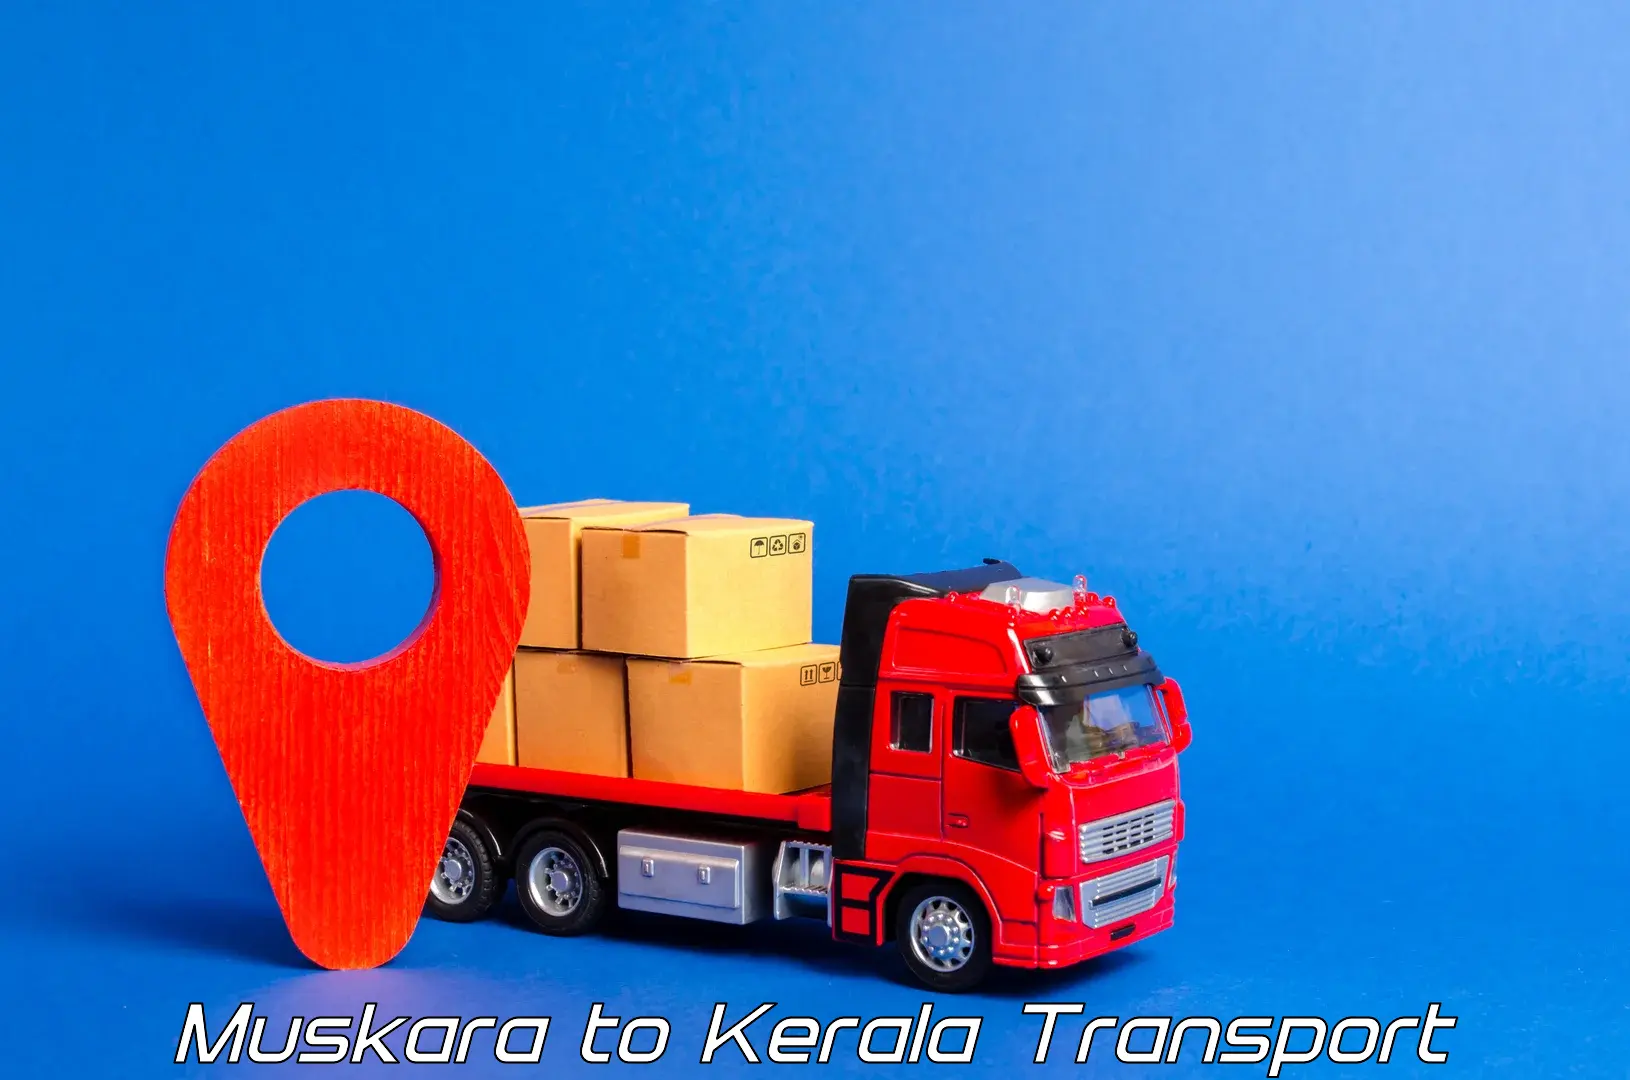 Shipping partner in Muskara to Kadanad